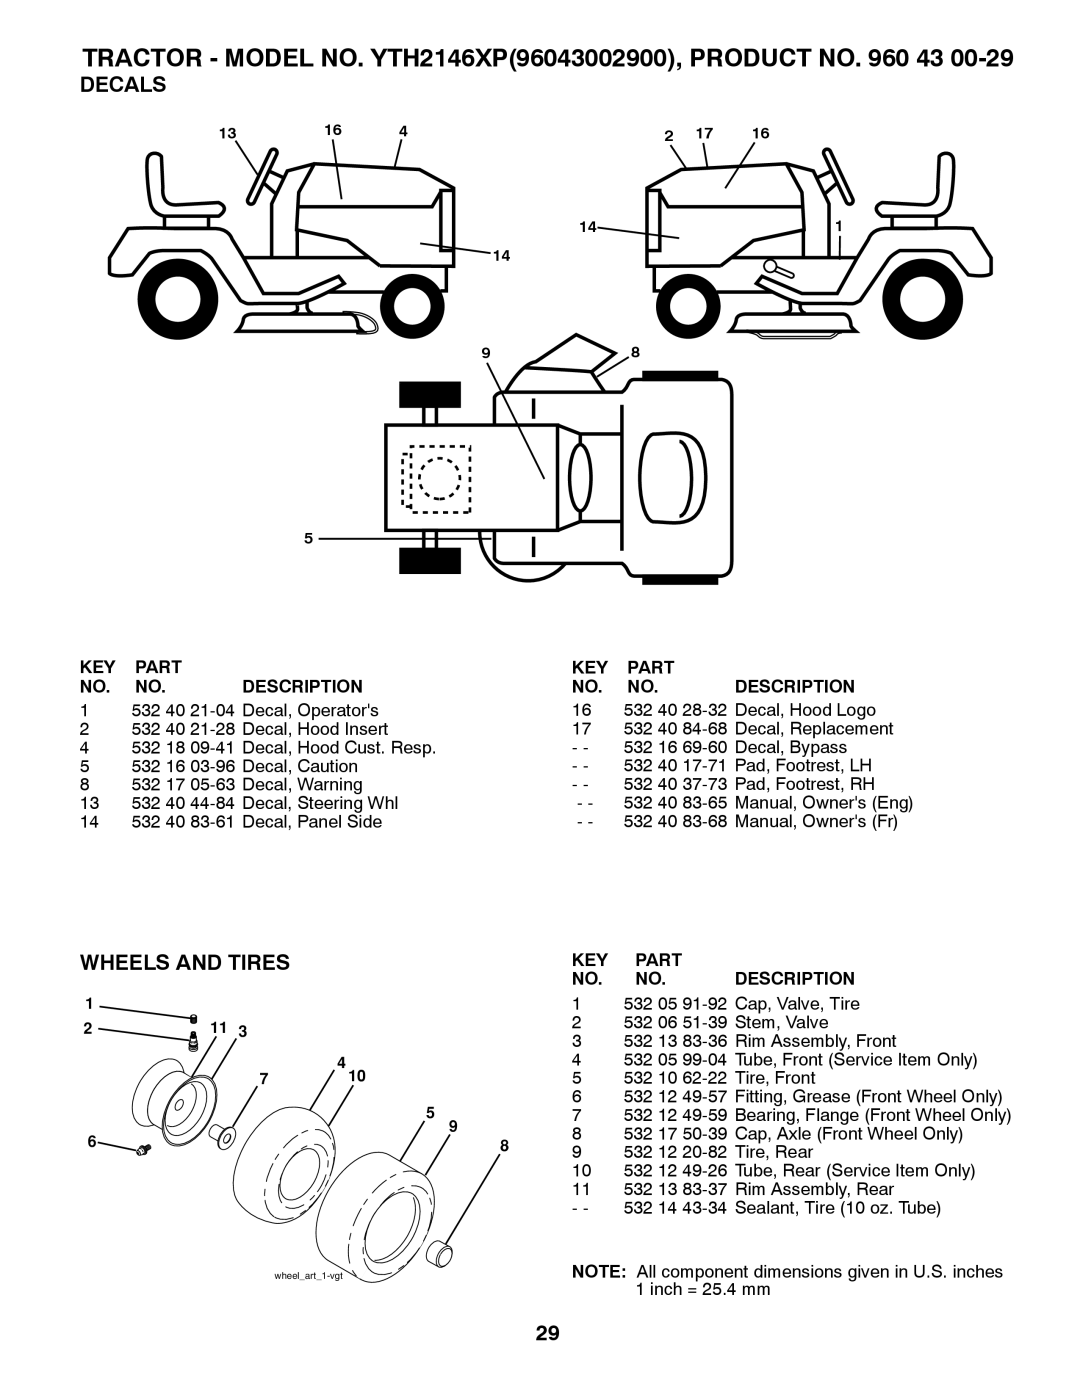 Husqvarna Decals, Wheels And Tires, TRACTOR - MODEL NO. YTH2146XP96043002900, PRODUCT NO. 960, Part, Description 